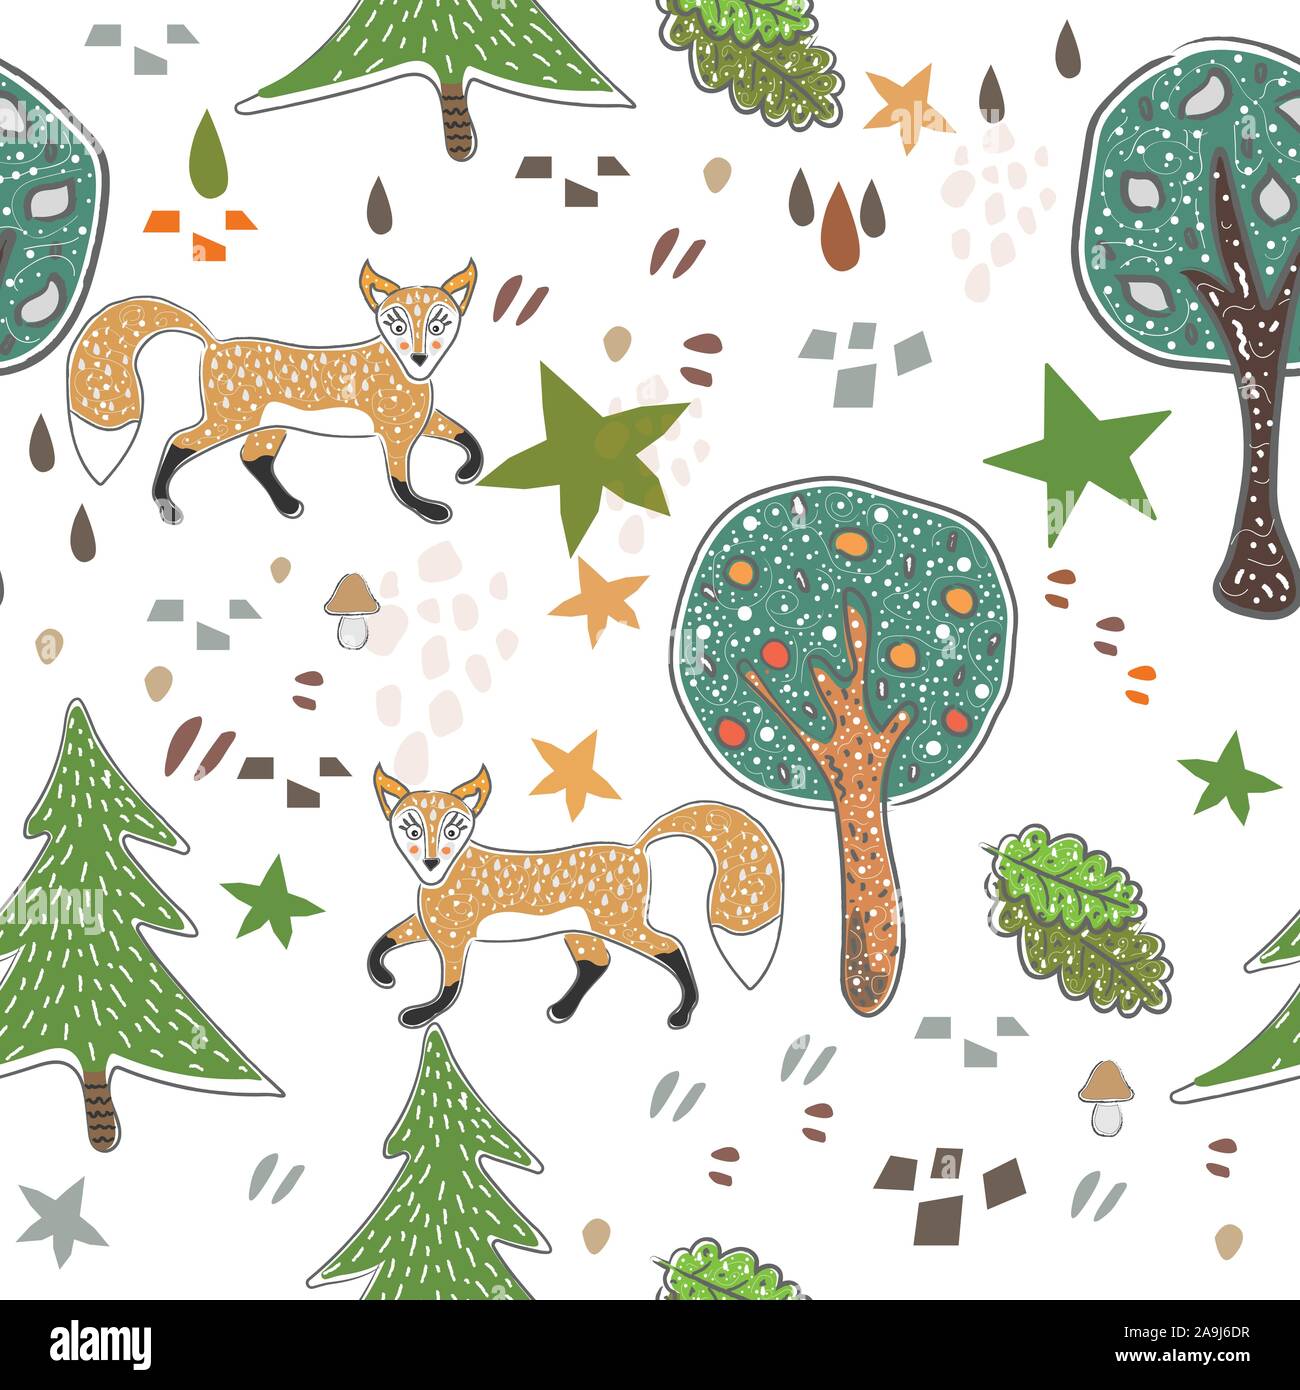 Fox transparente avec motif mignon les arbres, les étoiles, des renards et des formes abstraites. Cute Style scandinave. Illustration de Vecteur